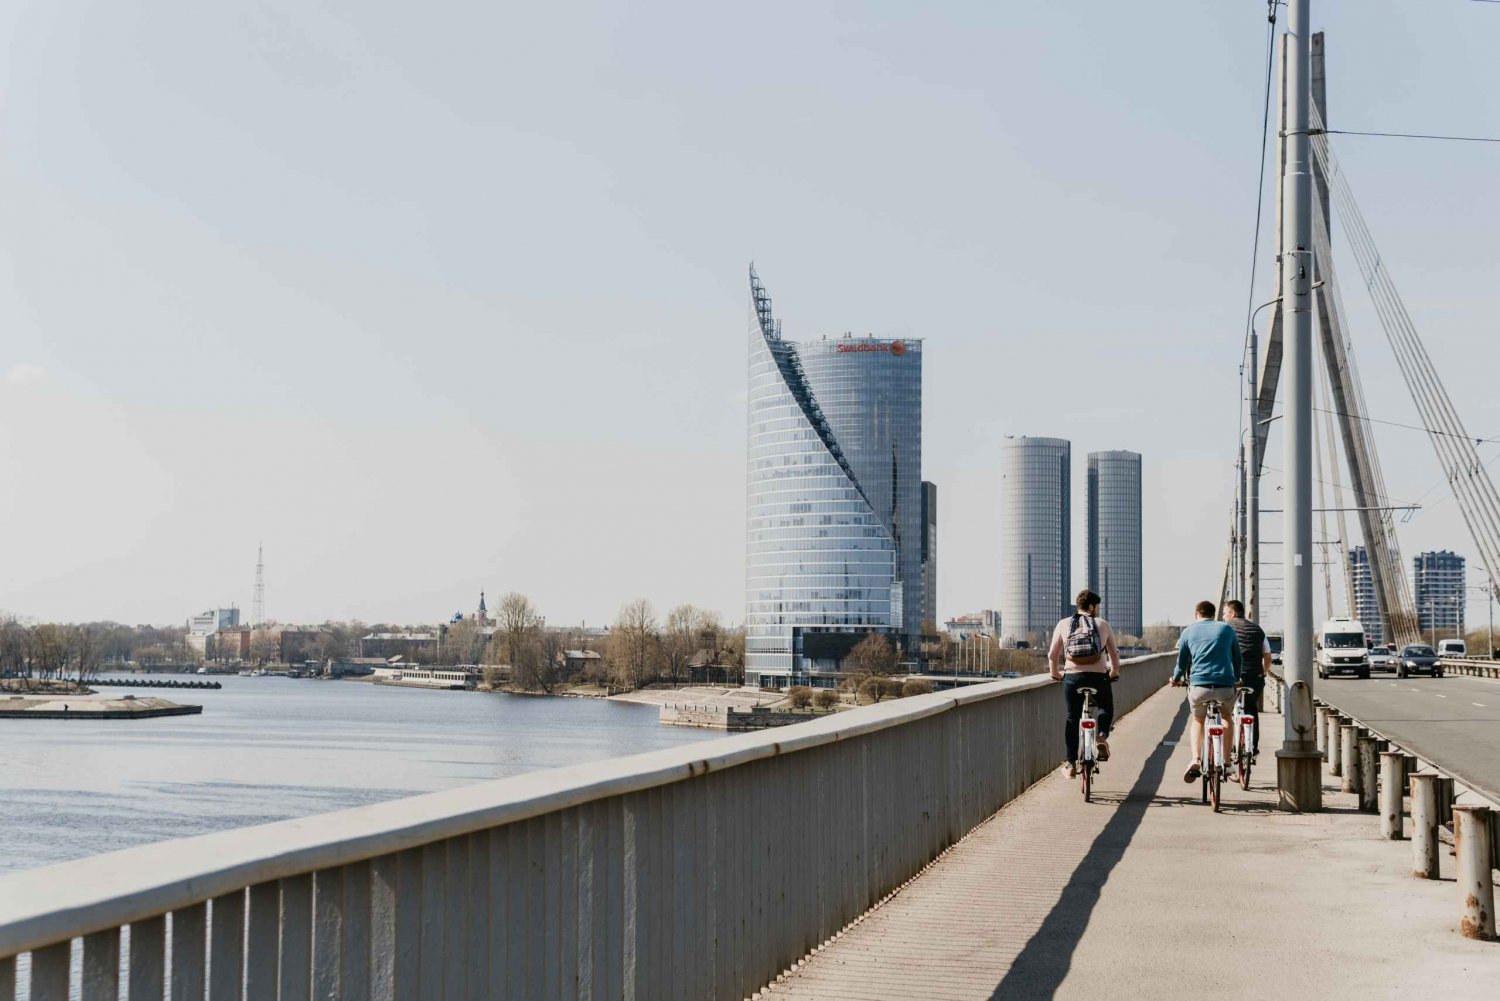 Riga: Jurmala Resort begeleide fietstocht en museumbezoek